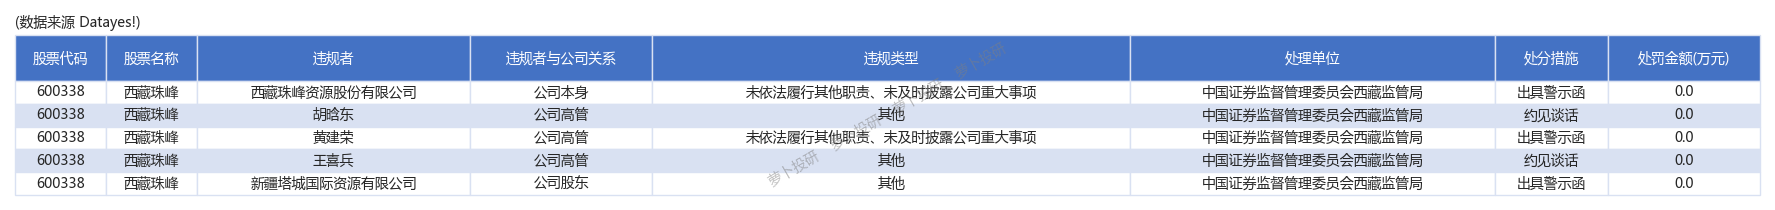 万丰奥威,西藏珠峰等公司因为违法违规被处罚[24/04/19]